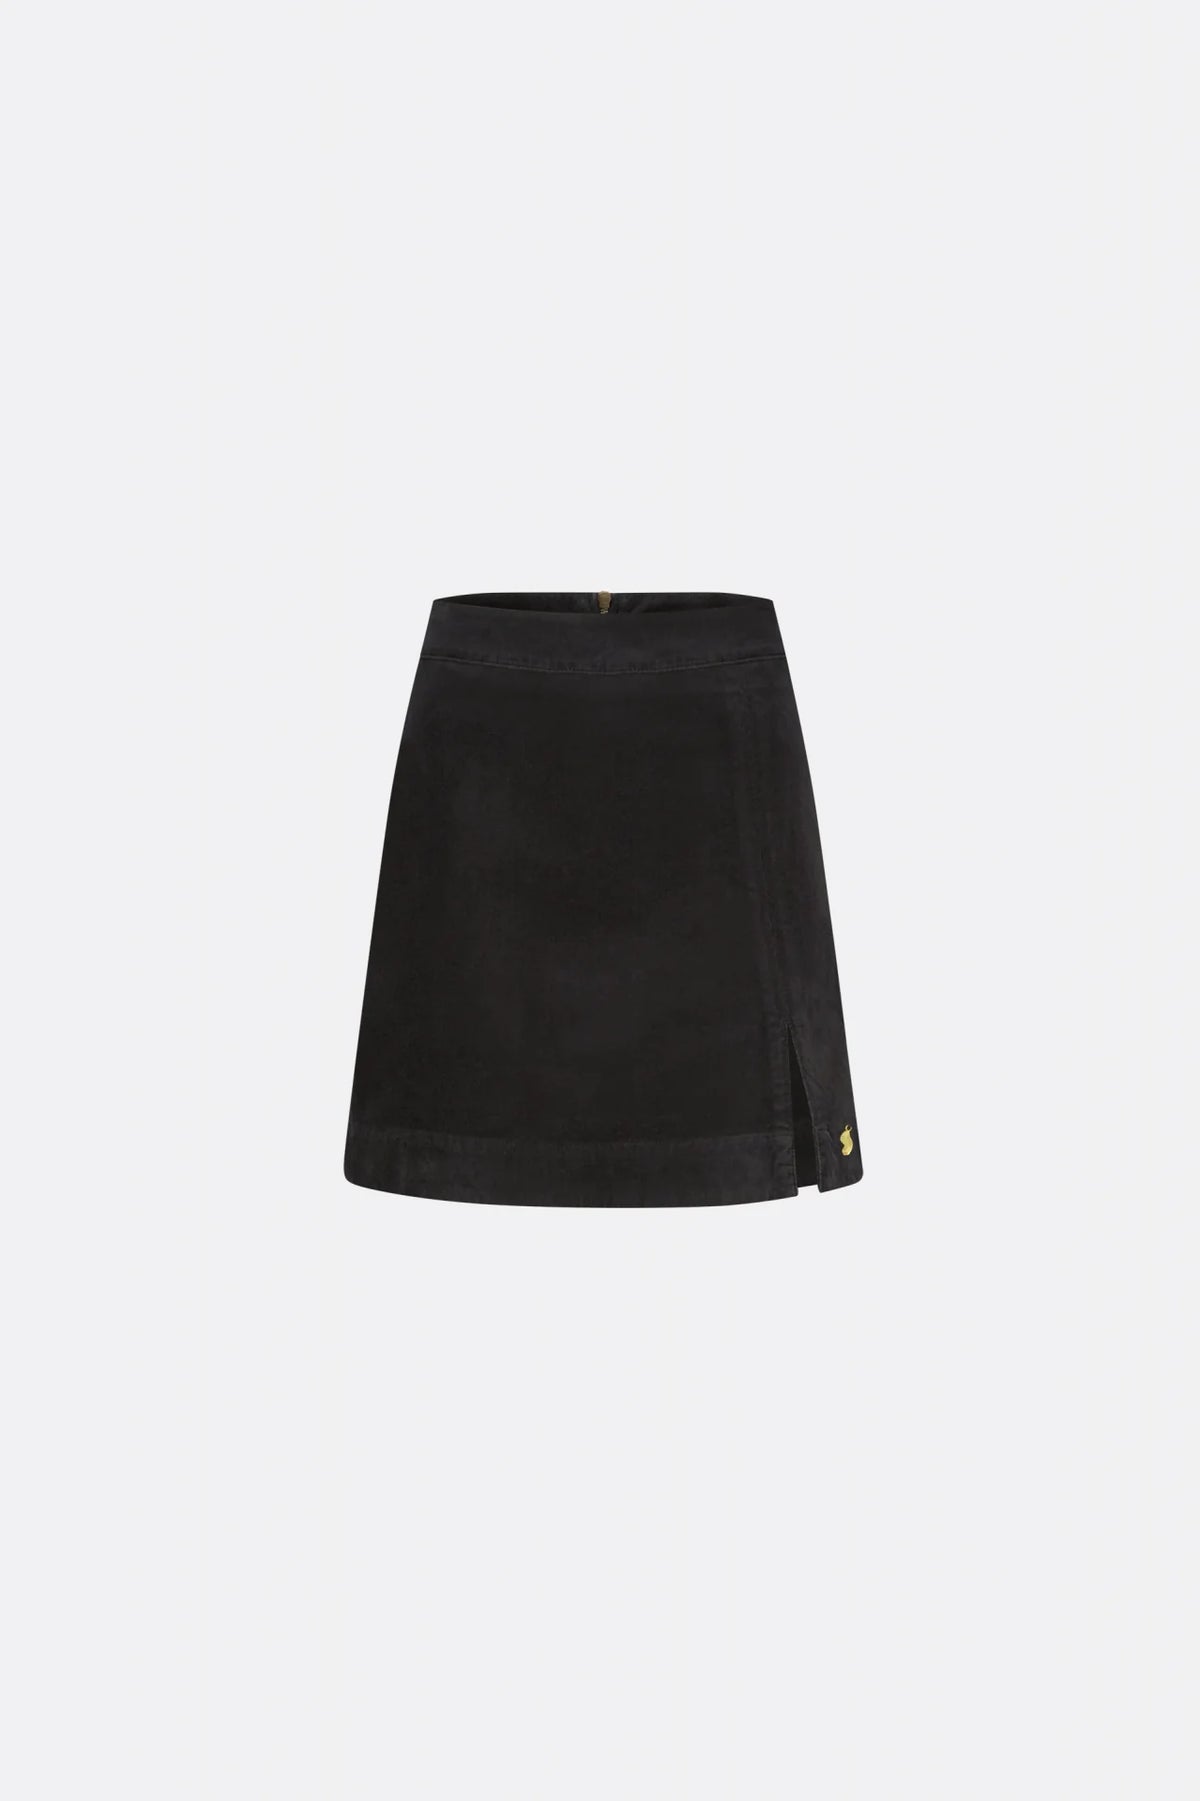 Short A line black fine corduroy skirt with front side split